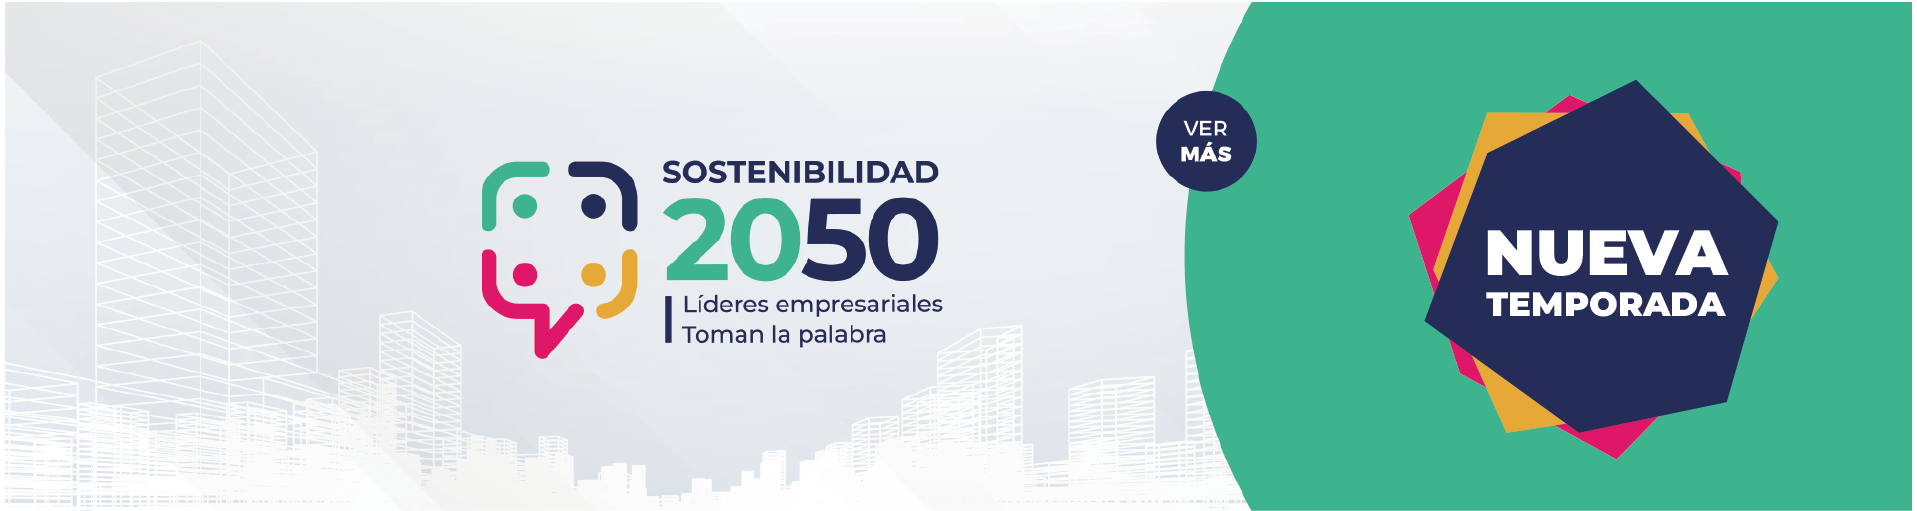 Sostenibilidad 2050_Nueva temporada